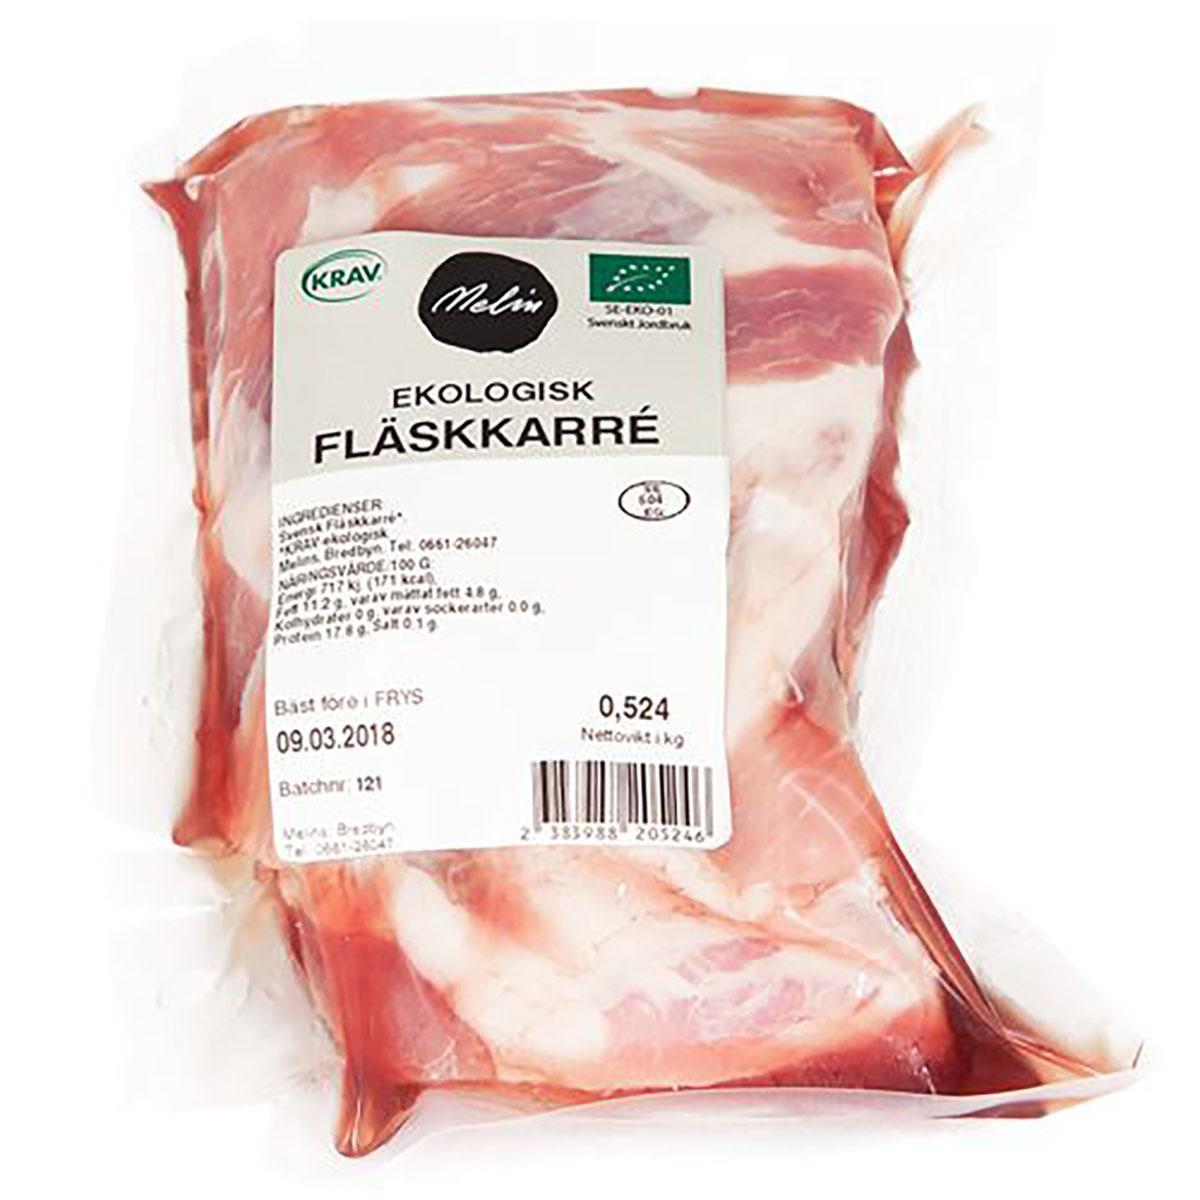 Melins's Fläskkarré'